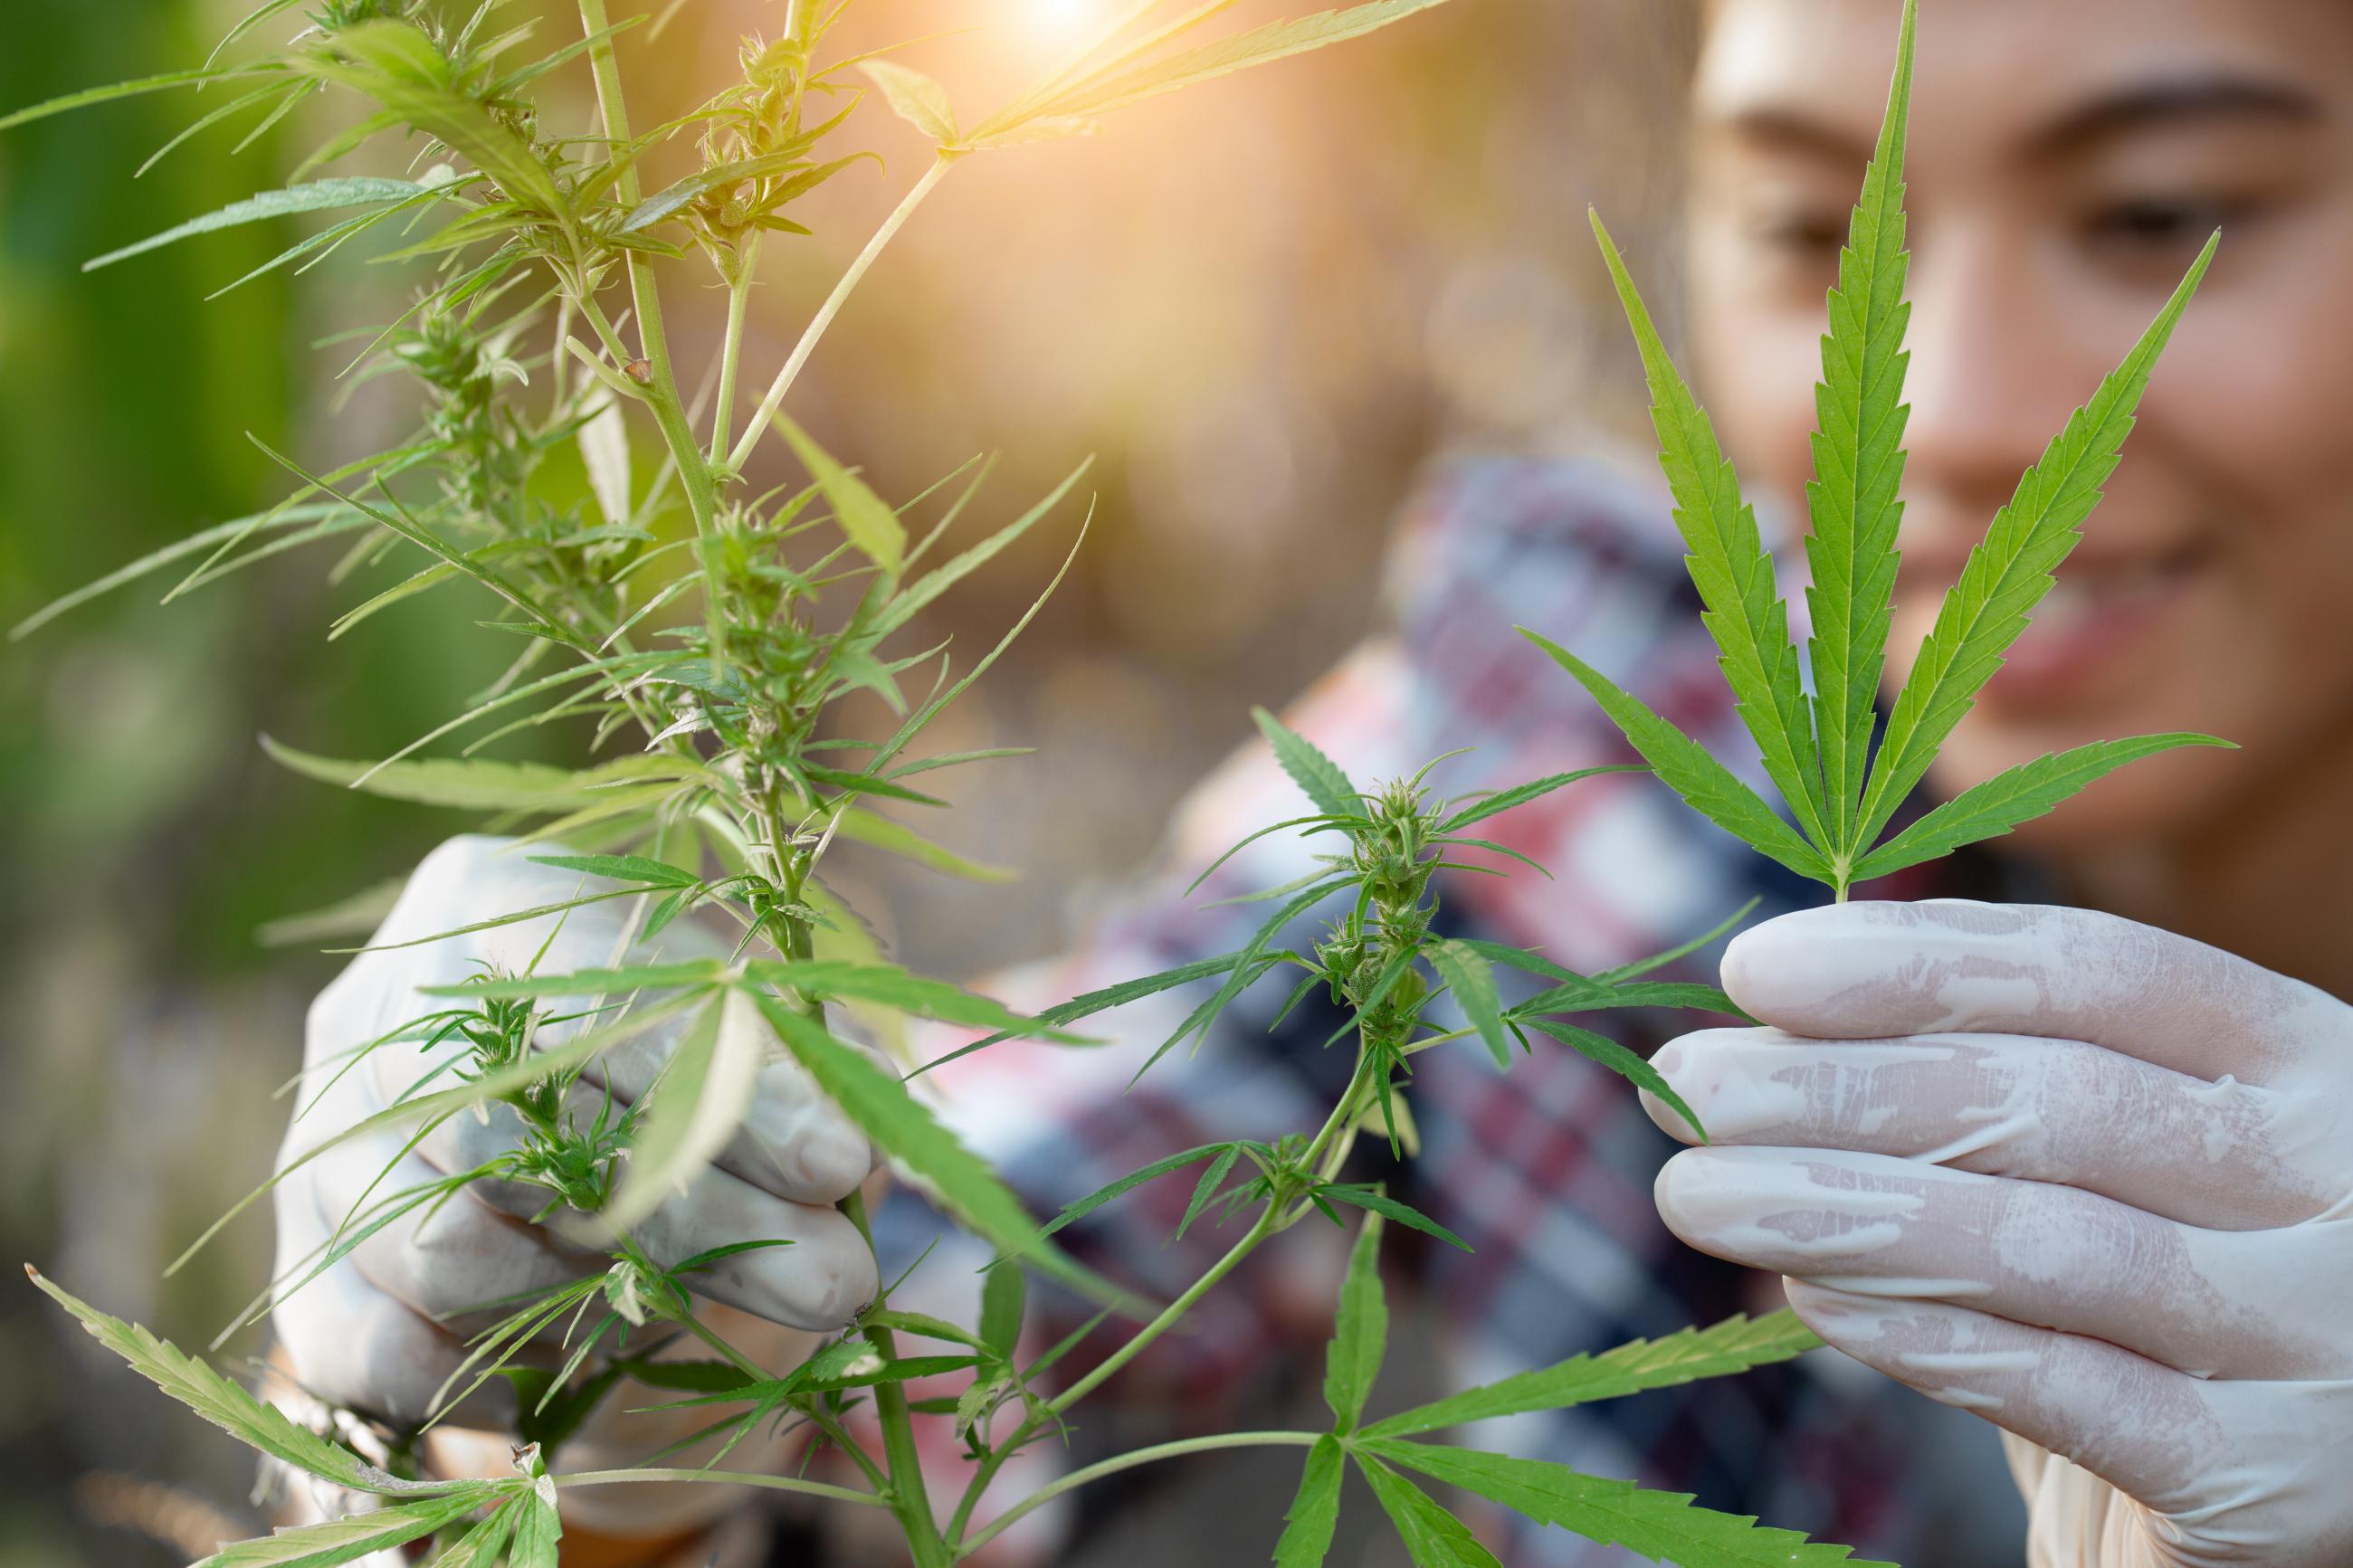 A woman examines marijuana plants.